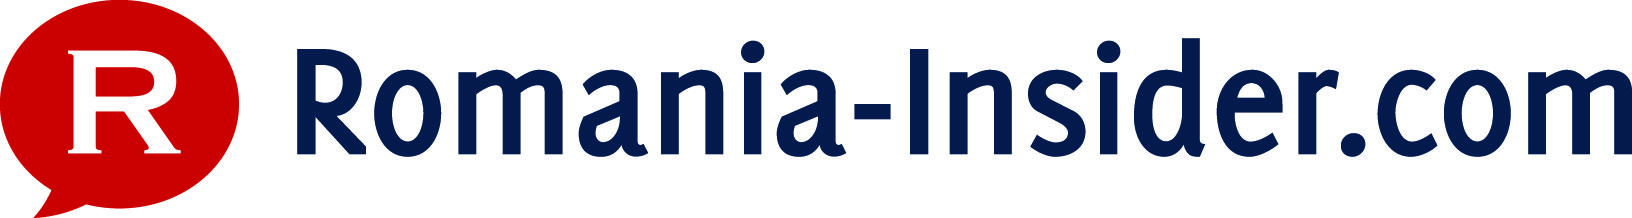 logo romania-insider ill9